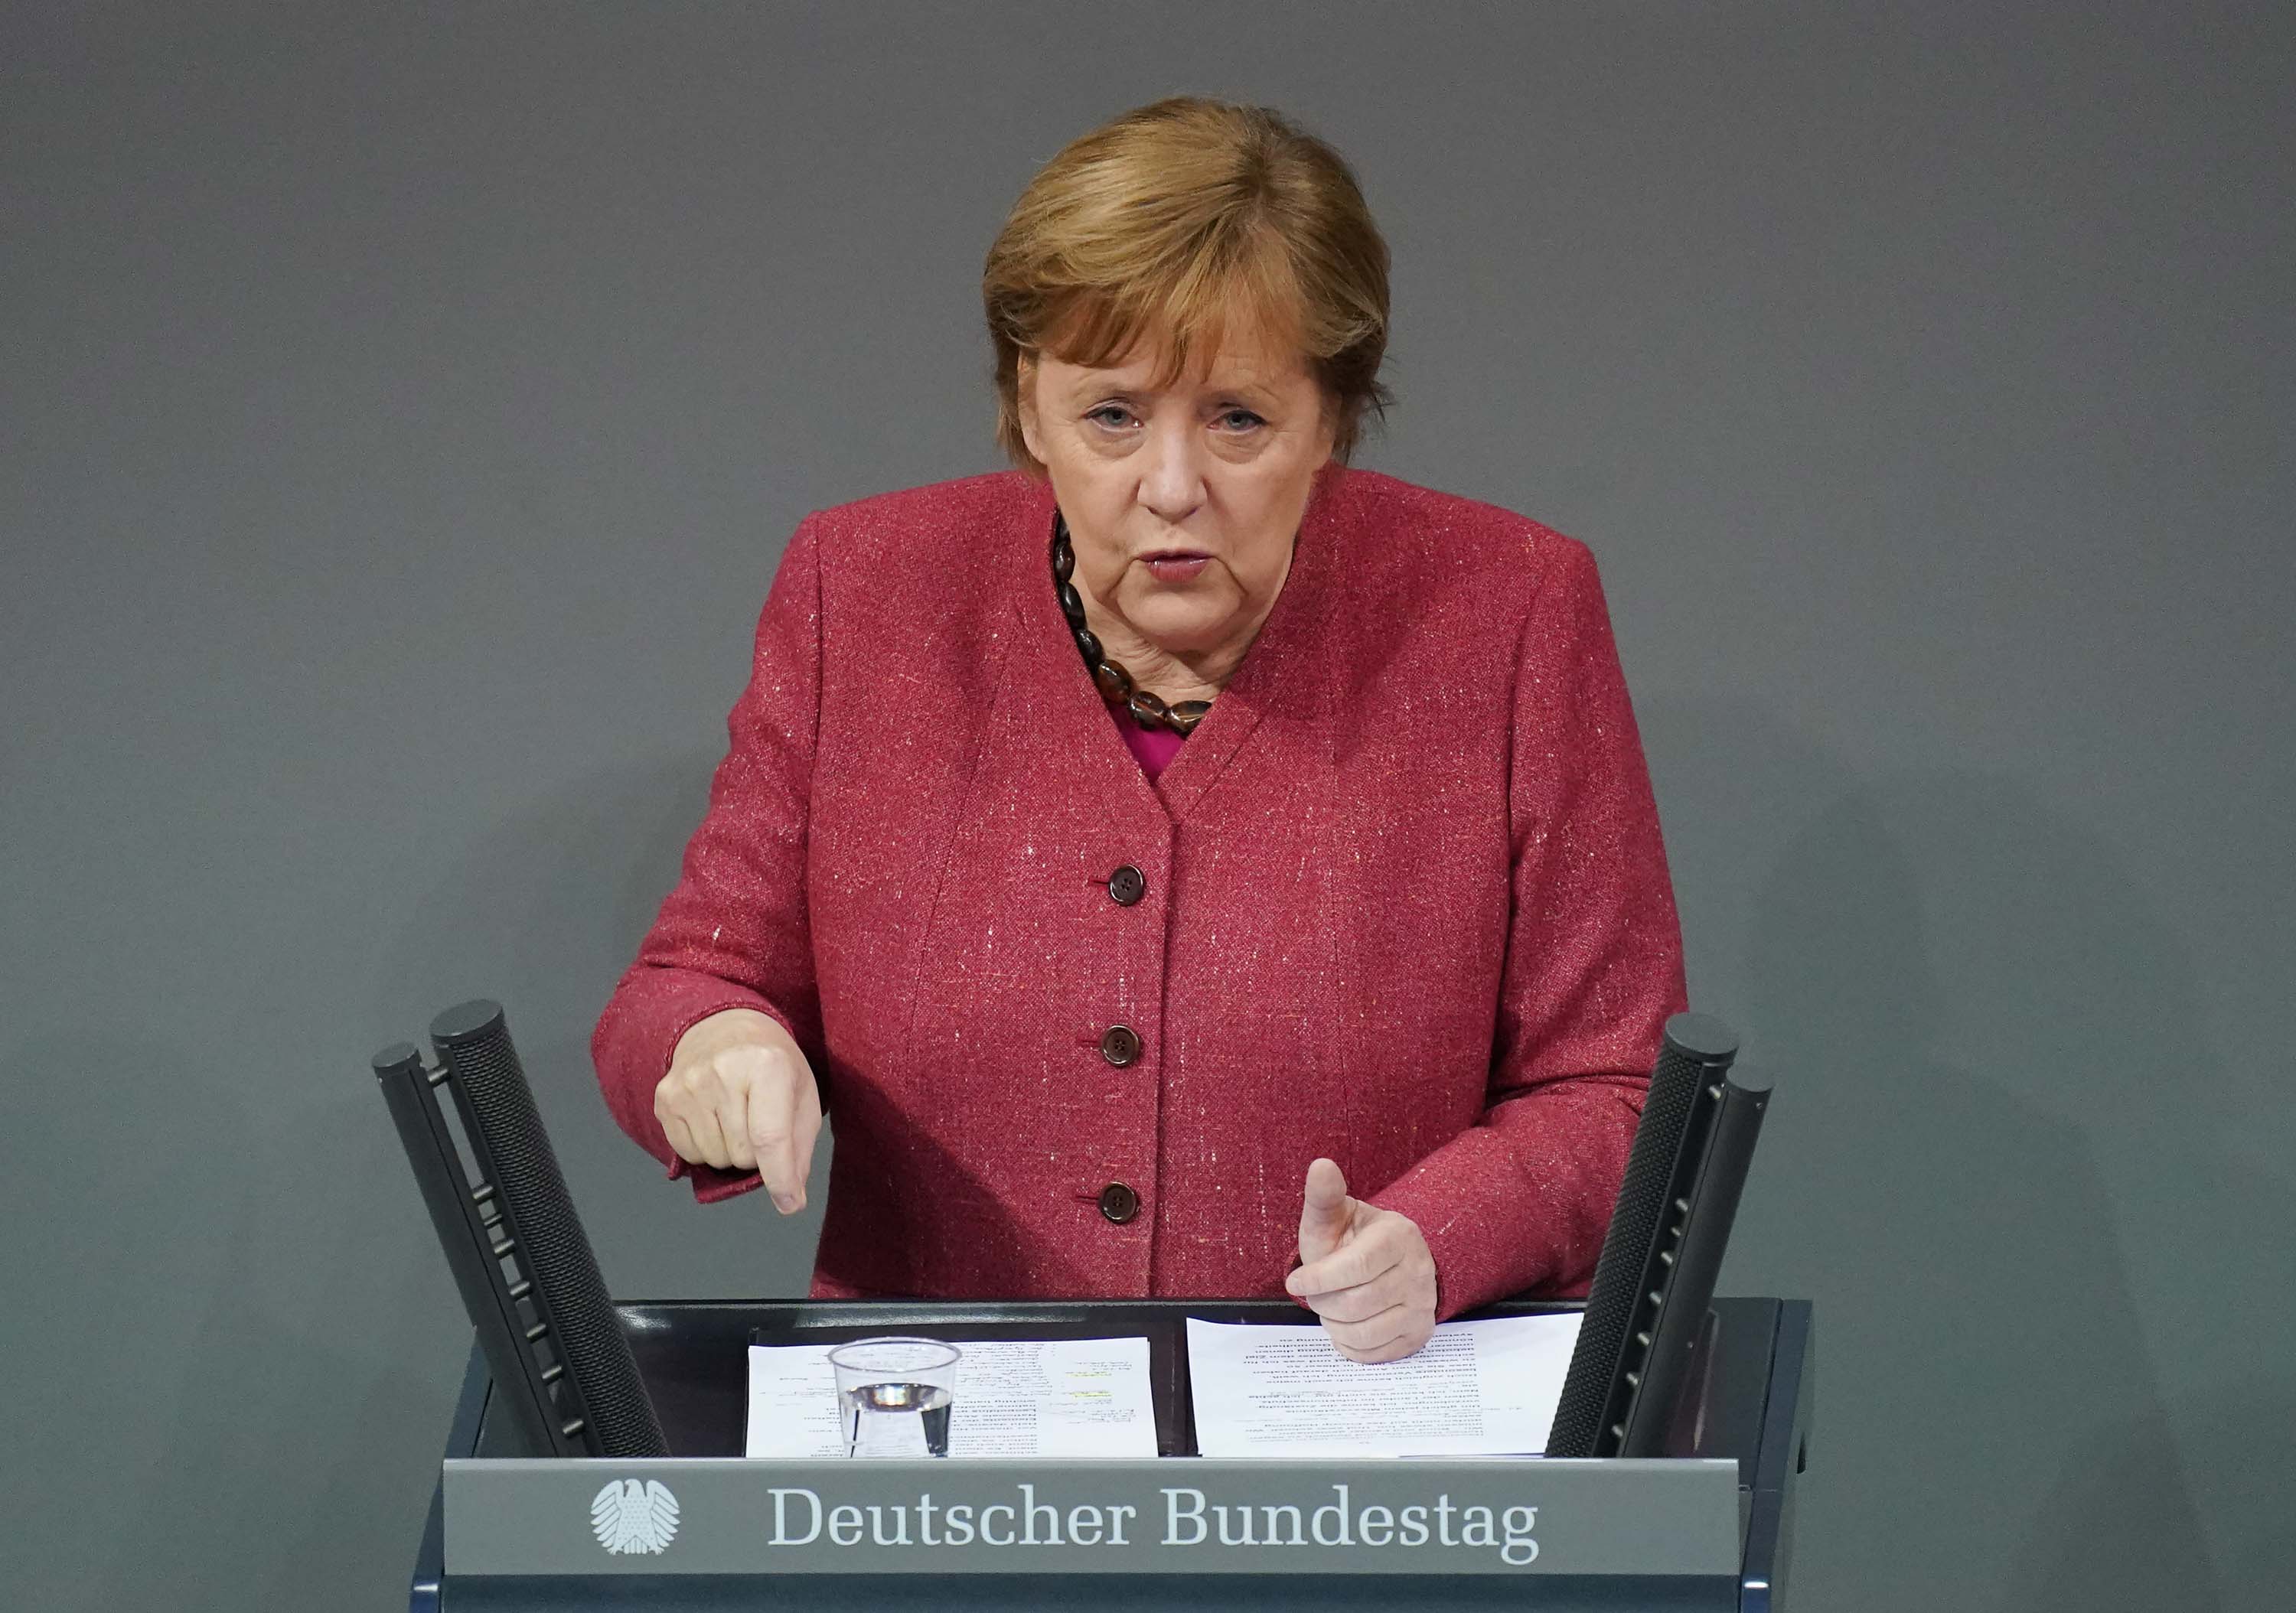 German Chancellor Angela Merkel speaks at the Bundestag in Berlin, Germany, on December 9.